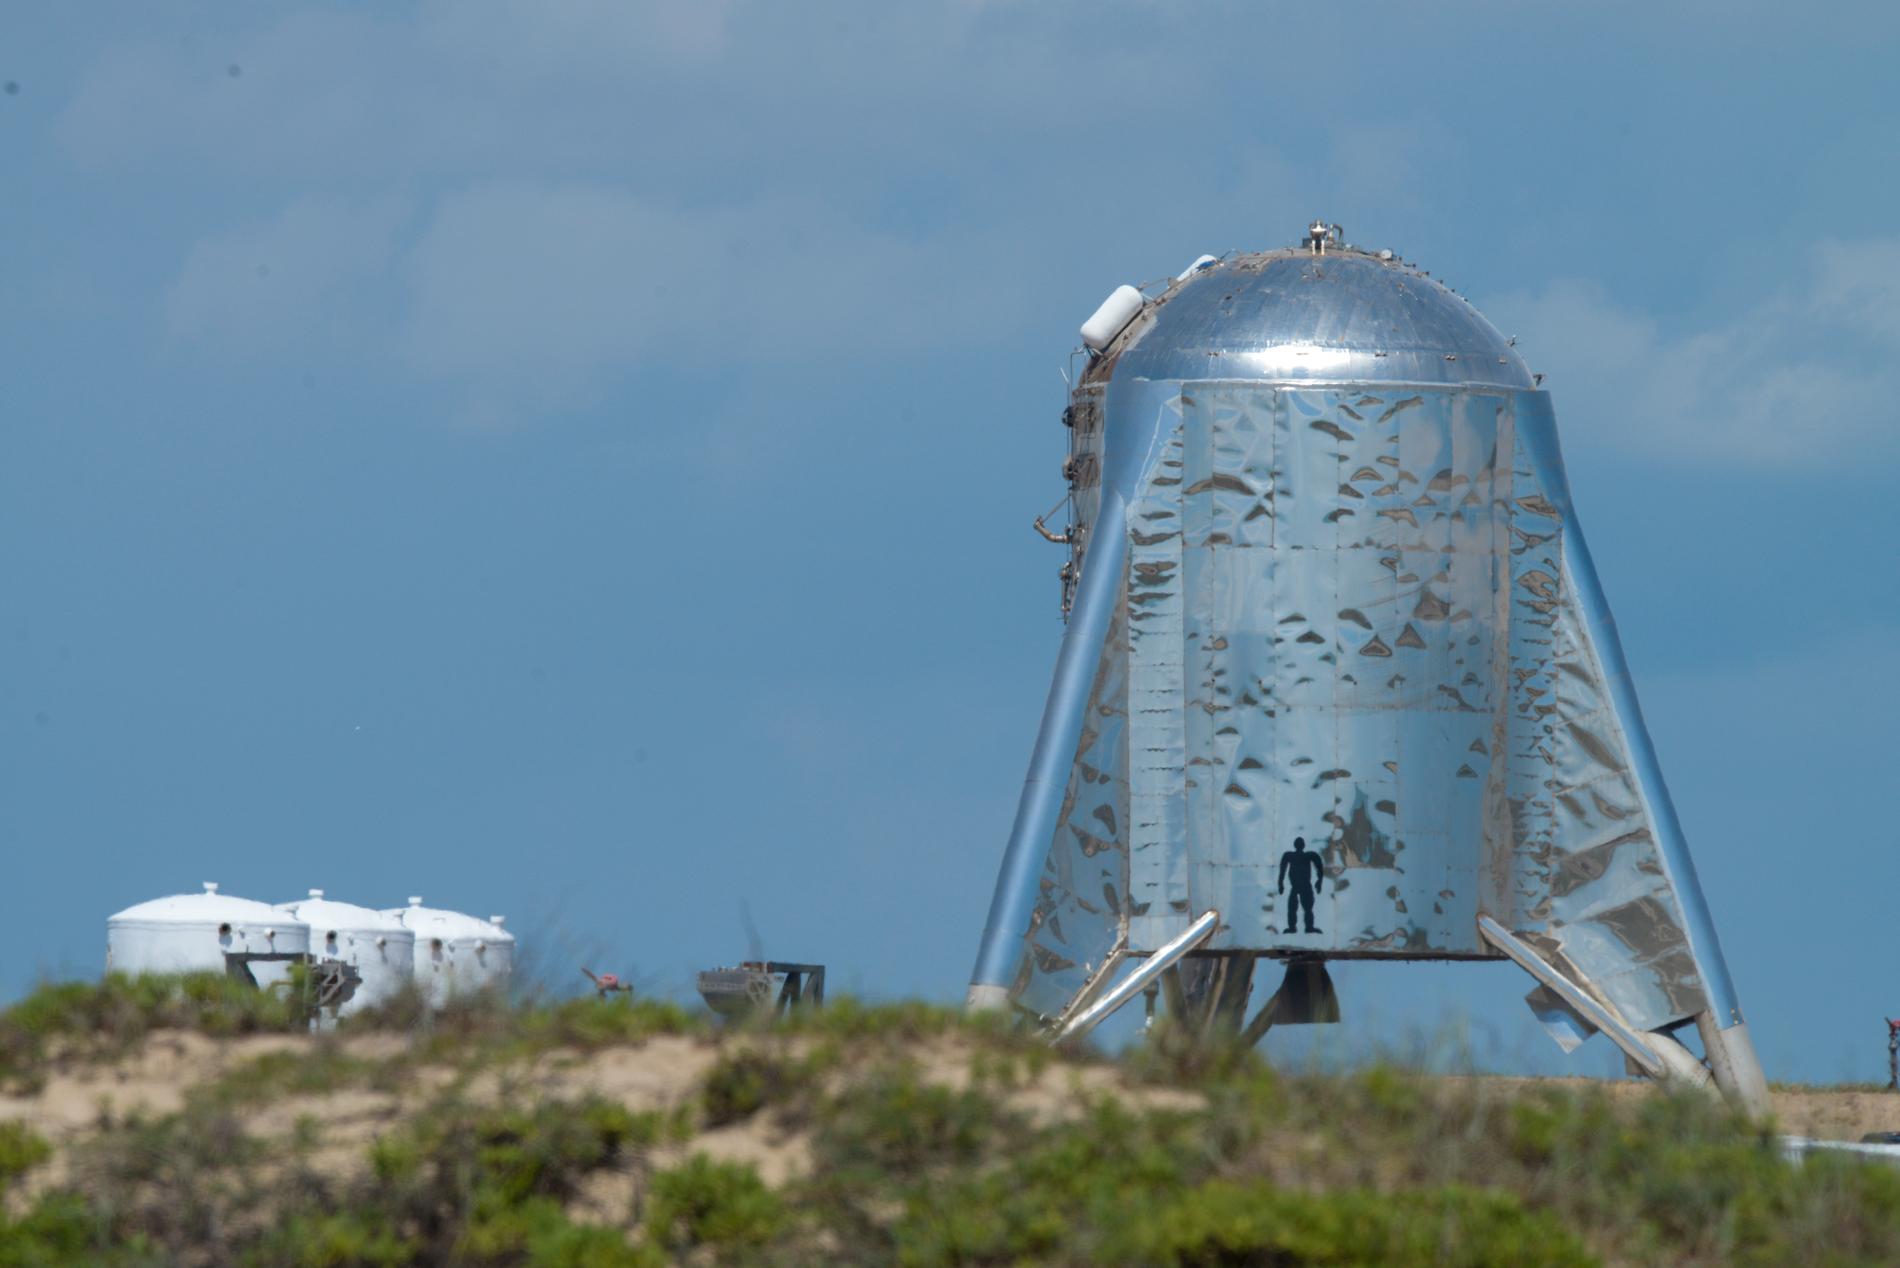 Prototypen Starhopper i Brownsville, Texas. Innan rymdskeppsmodellen flyger på riktigt ska den utrustas med noskon, och därmed bli mycket högre.